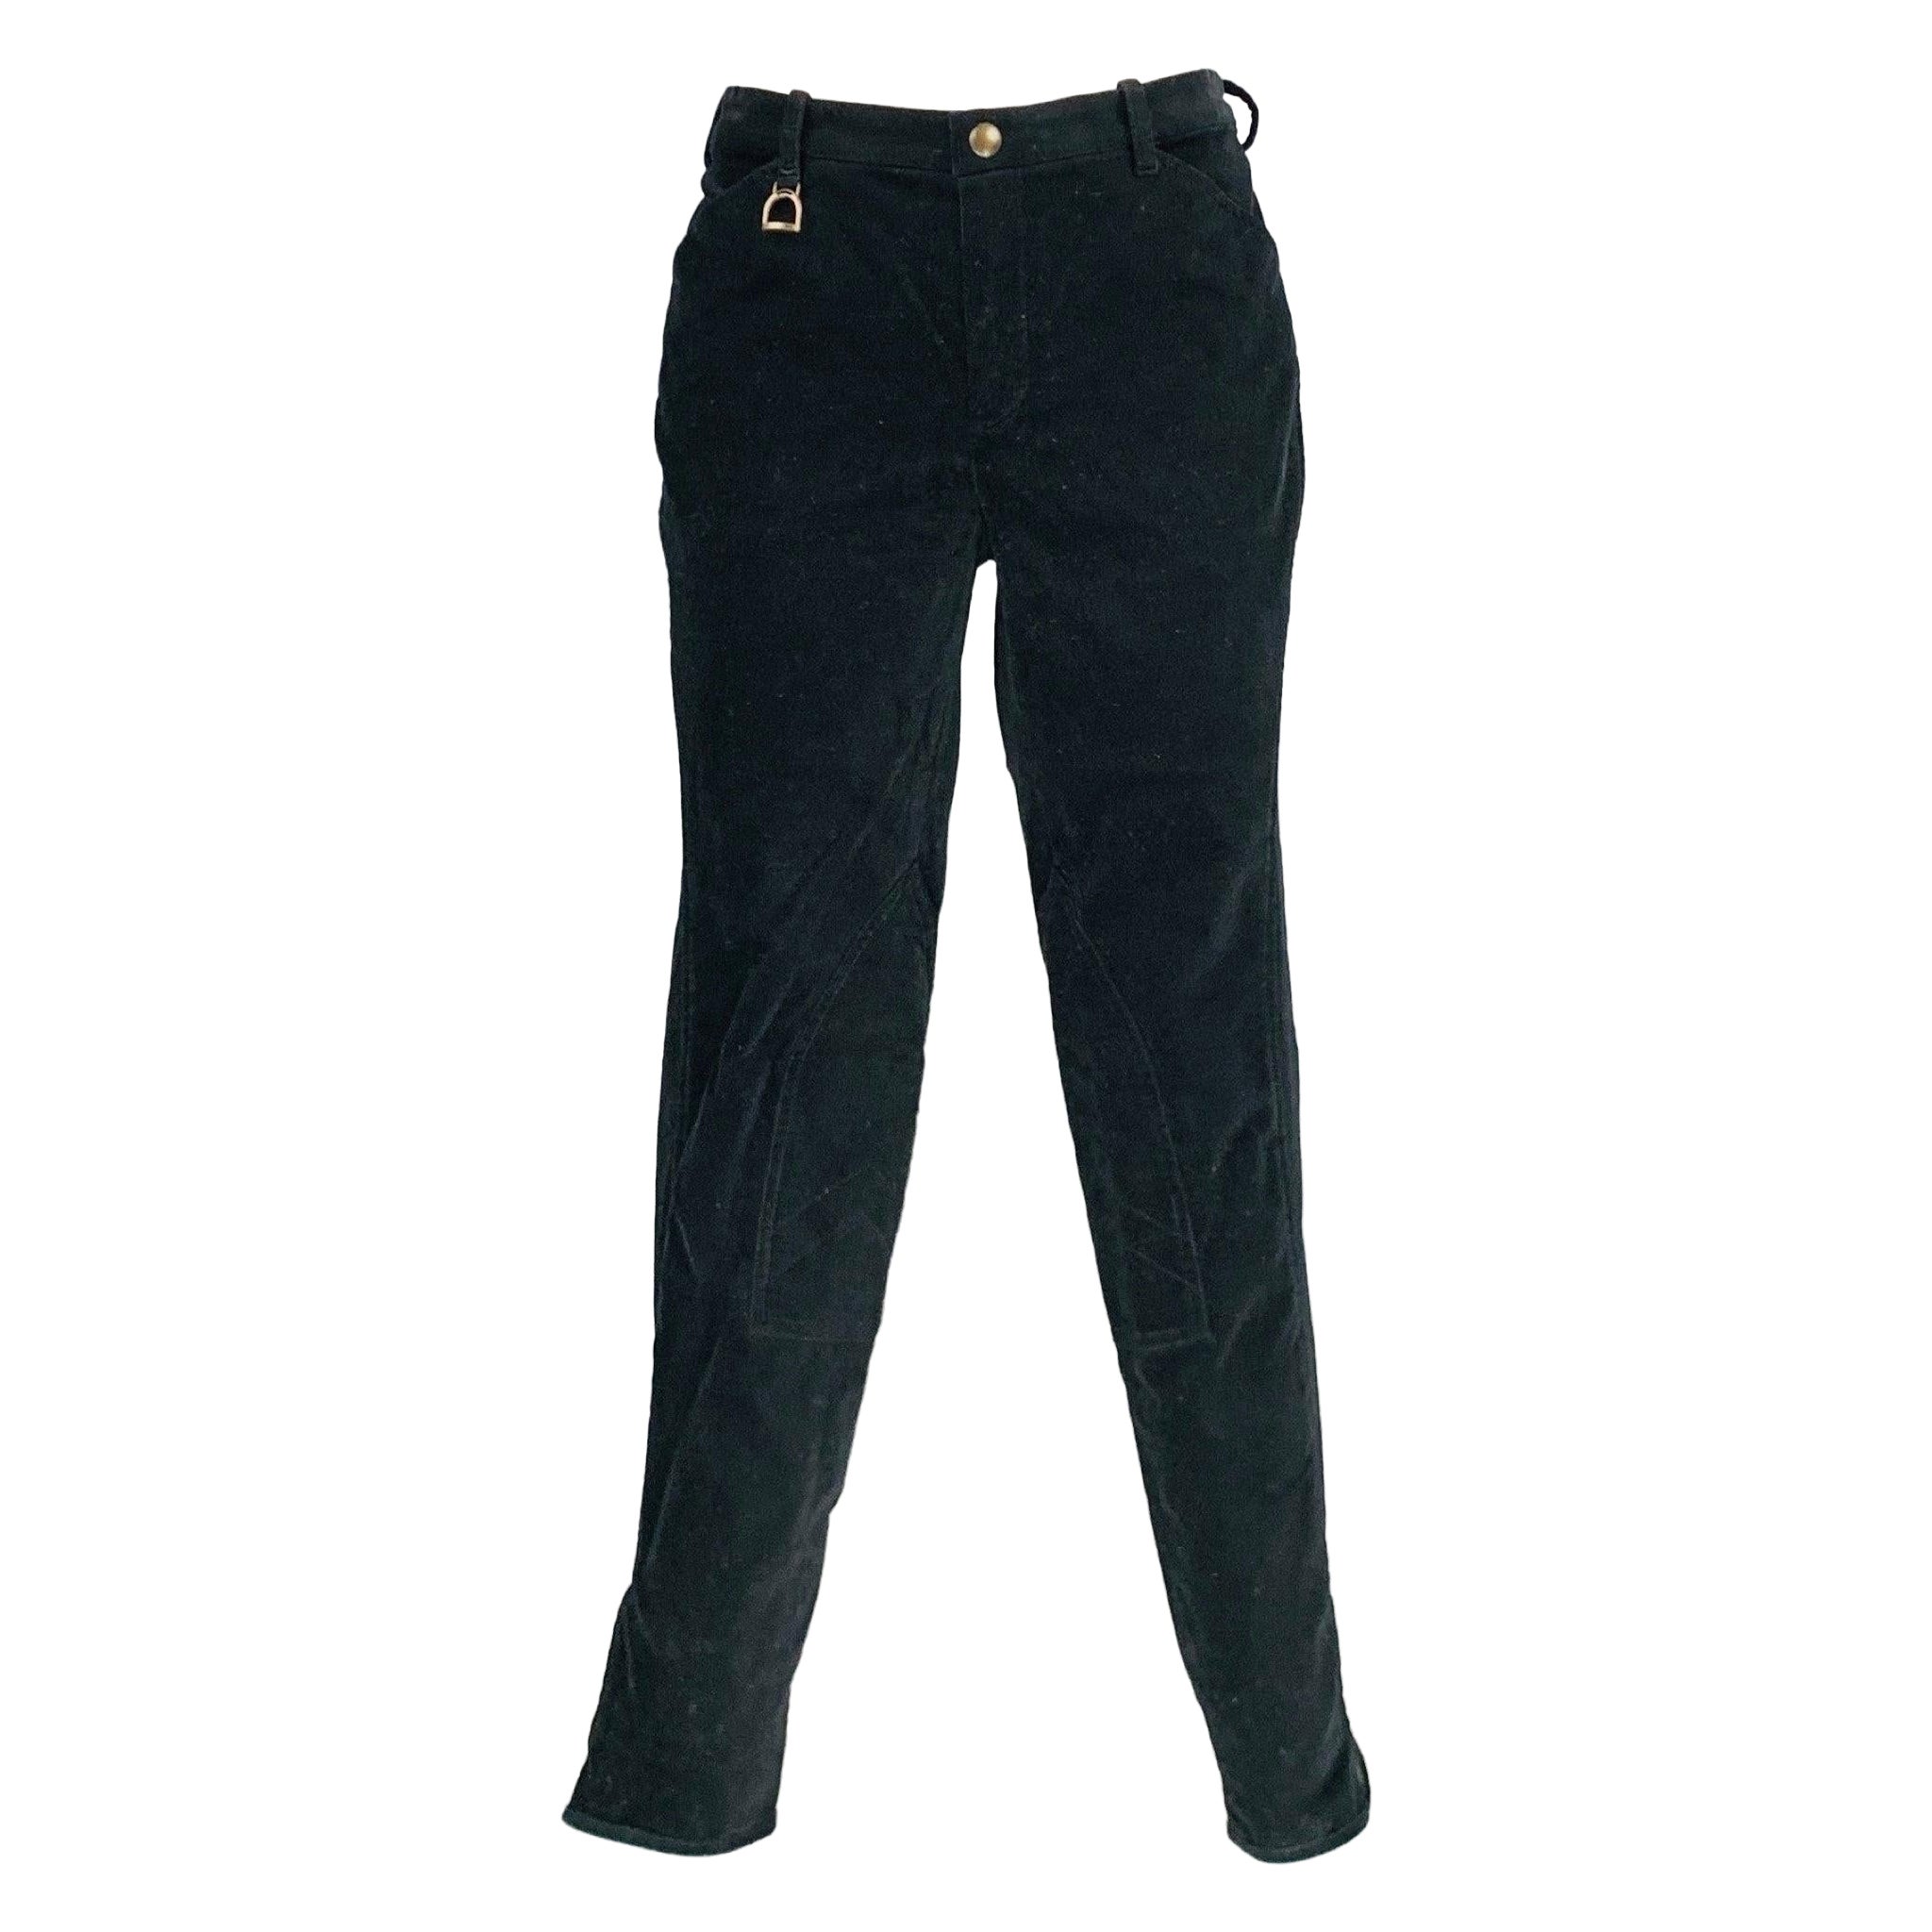 RALPH LAUREN Size 8 Black Cotton Elastane Casual Pants For Sale